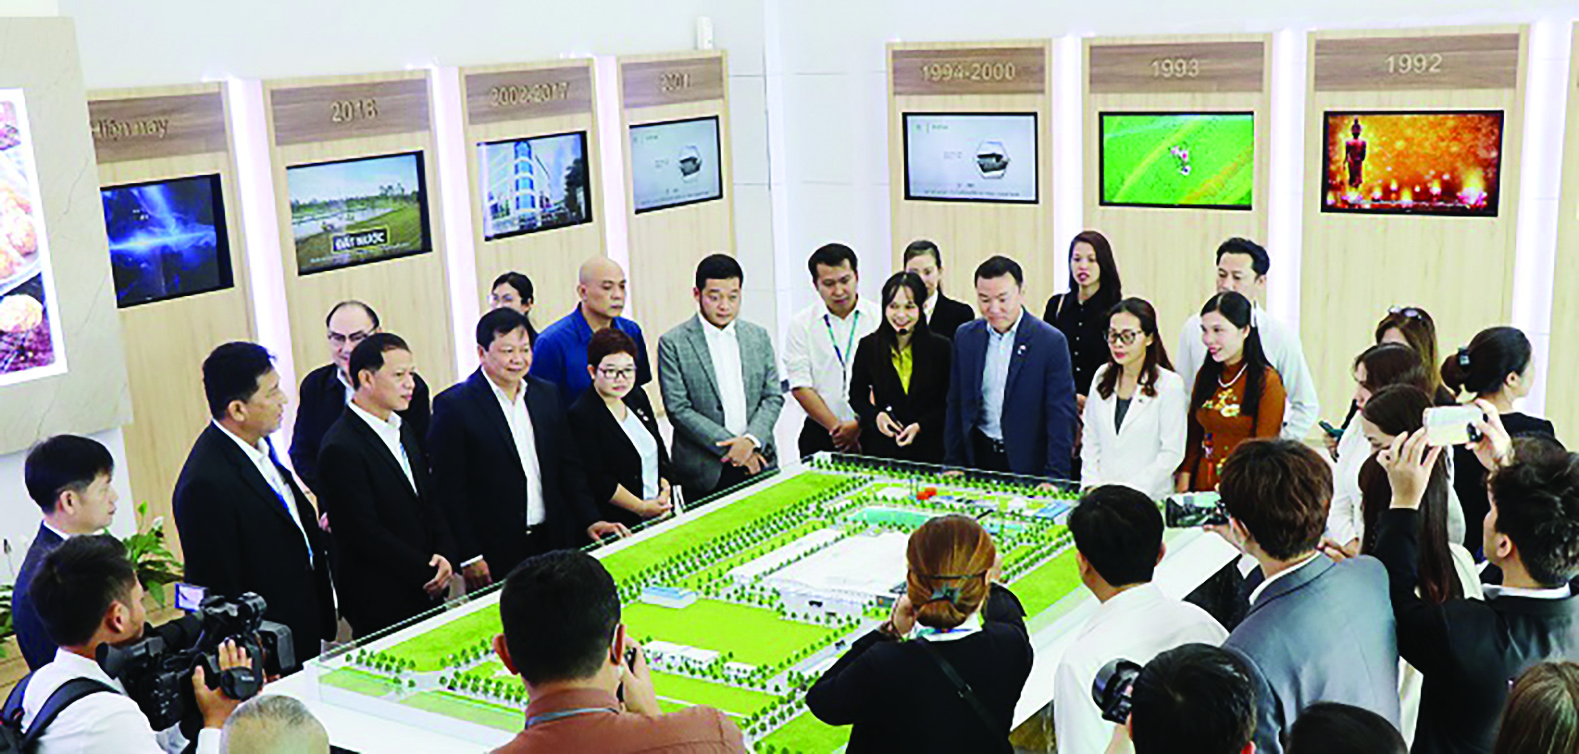  Phó Chủ tịch UBND tỉnh Trần Văn Mi và đoàn doanh nghiệp Nhật Bản khảo sát thực tế cơ sở hạ tầng Khu công nghiệp Becamex - Bình Phước.